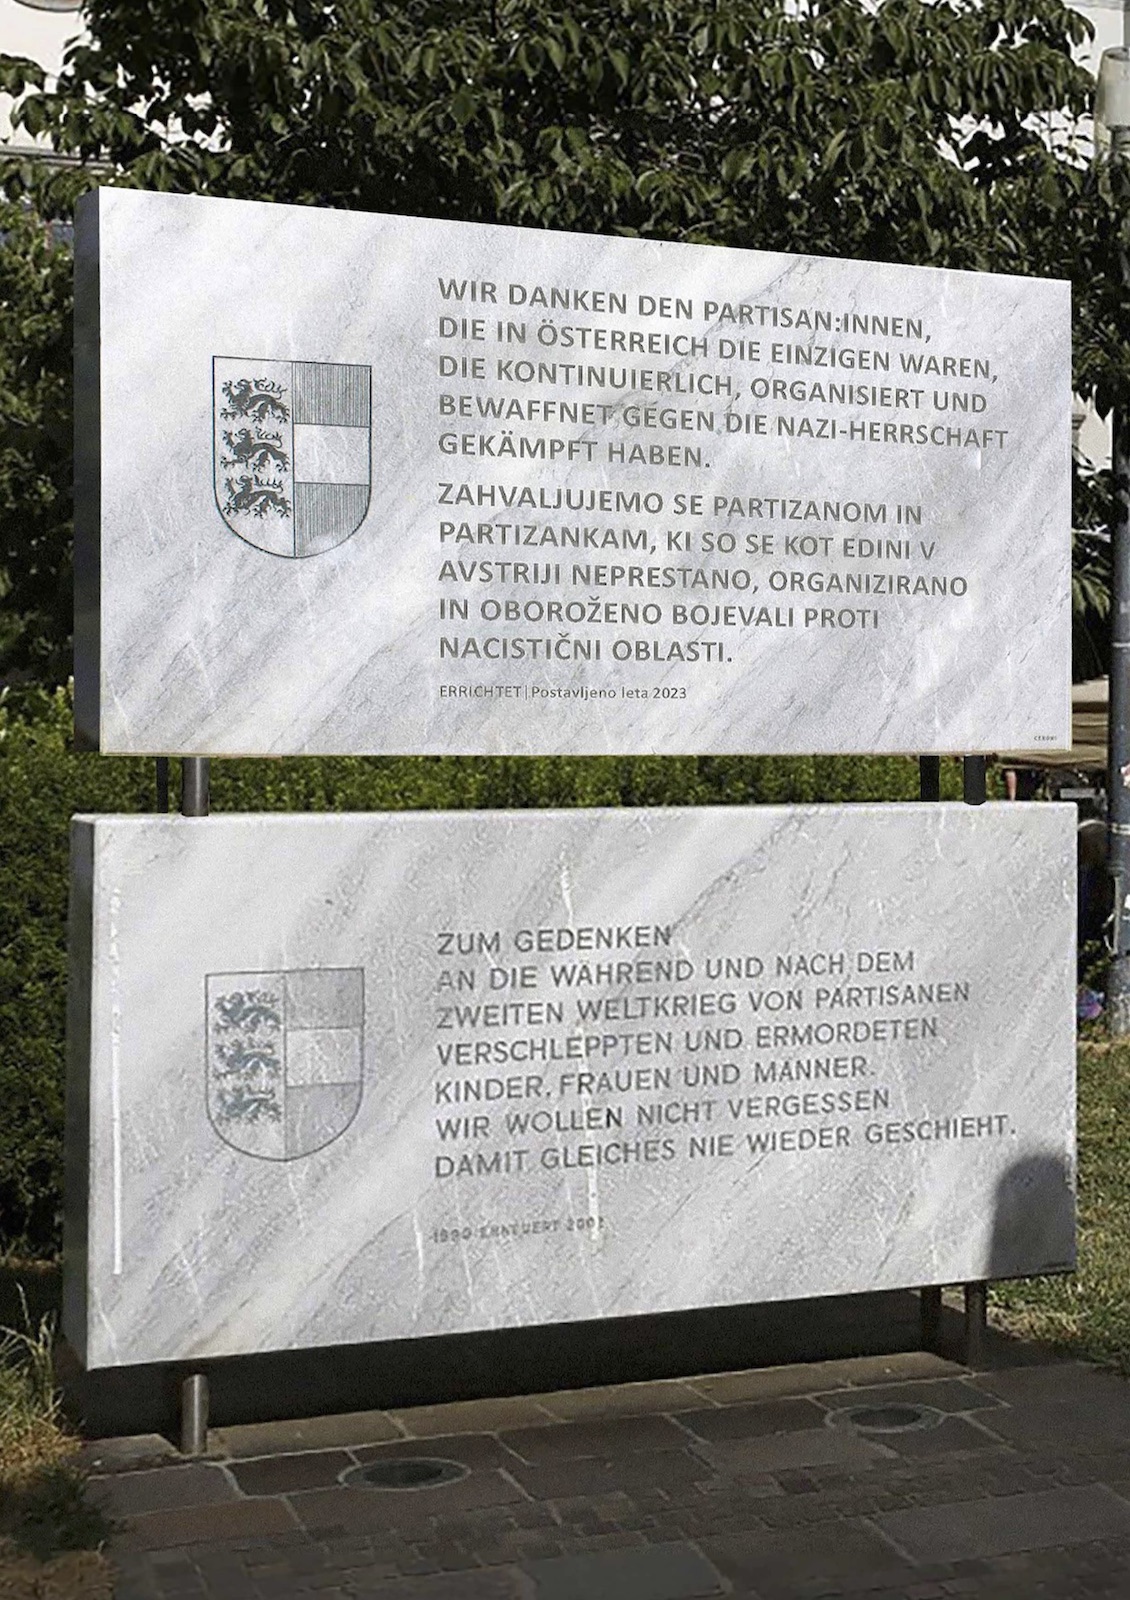 Martin Krenn | Entwurf für eine Gedenksteinerweiterung am Klagenfurter Domplatz | Predlog za razširitev spomenika na celovškem trgu pred stolnico
